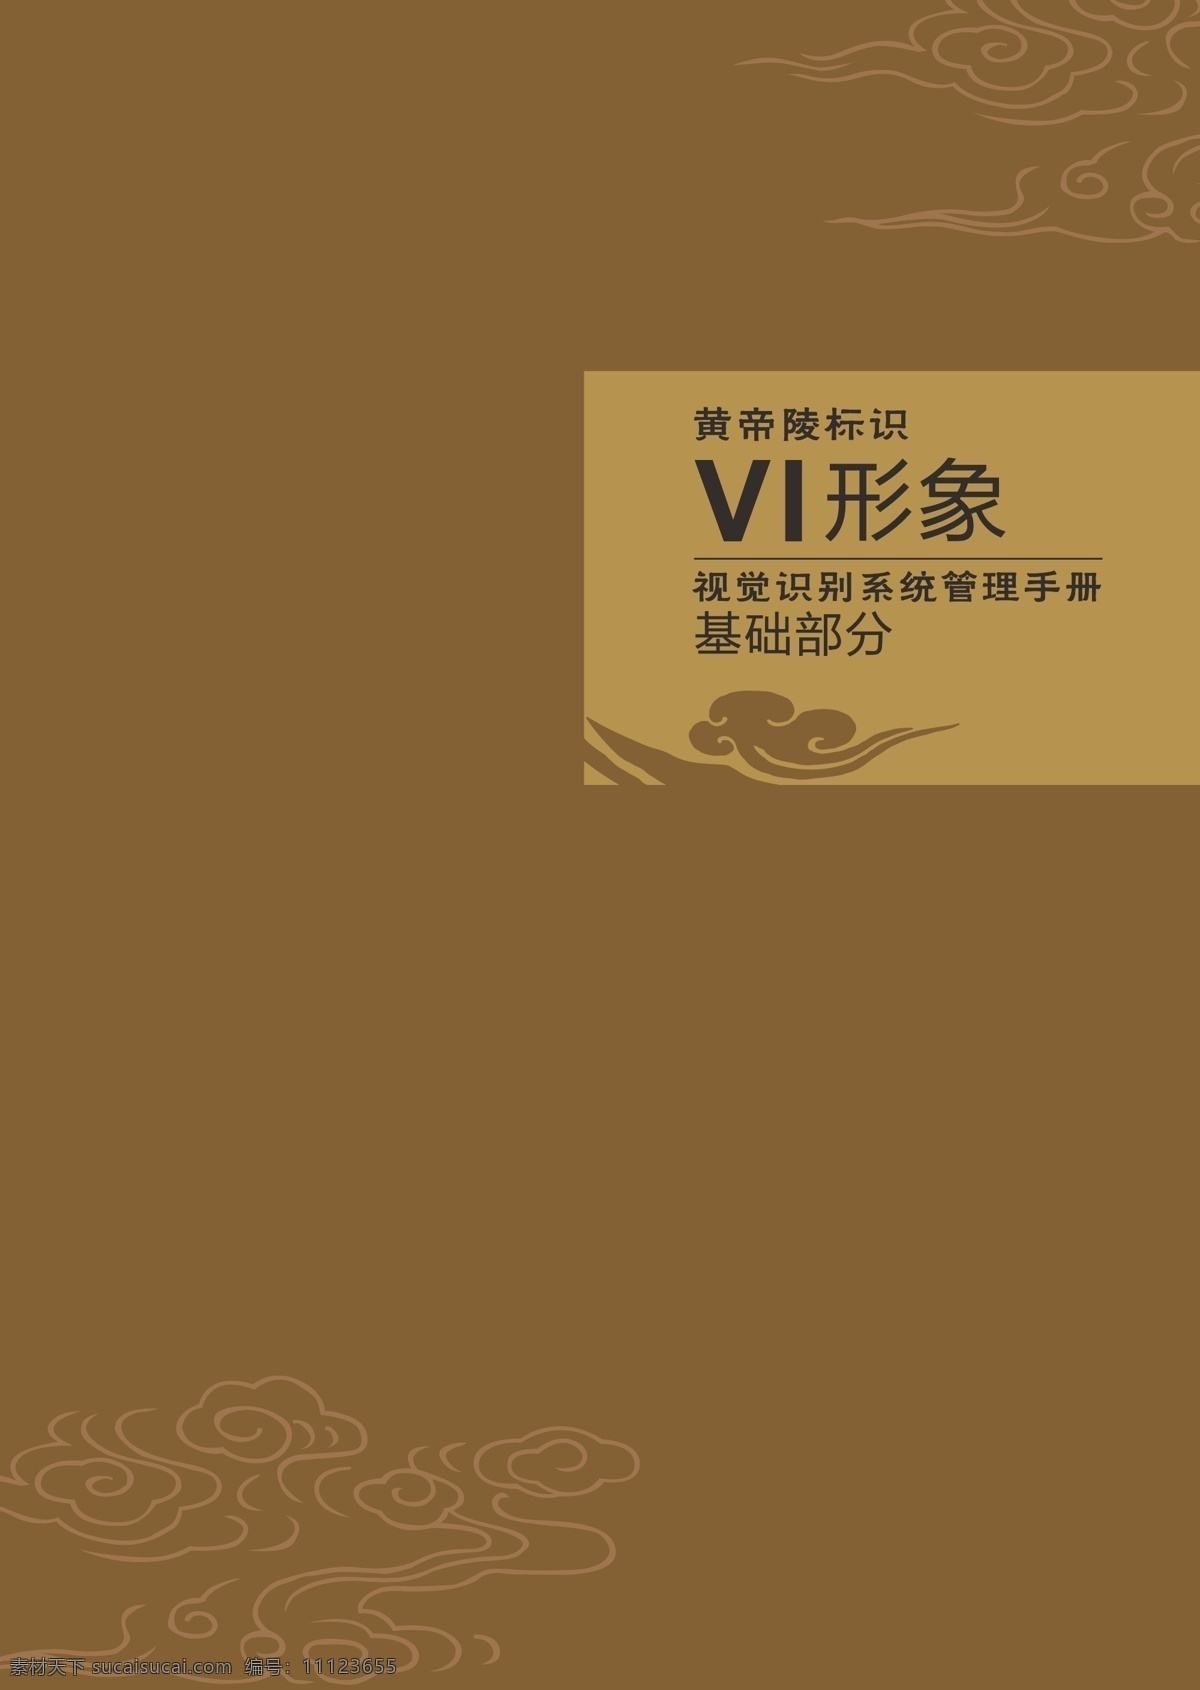 黄帝陵 标志 vi 黄陵县 古风 祭祖 矢量文件 可编辑 标志图标 公共标识标志